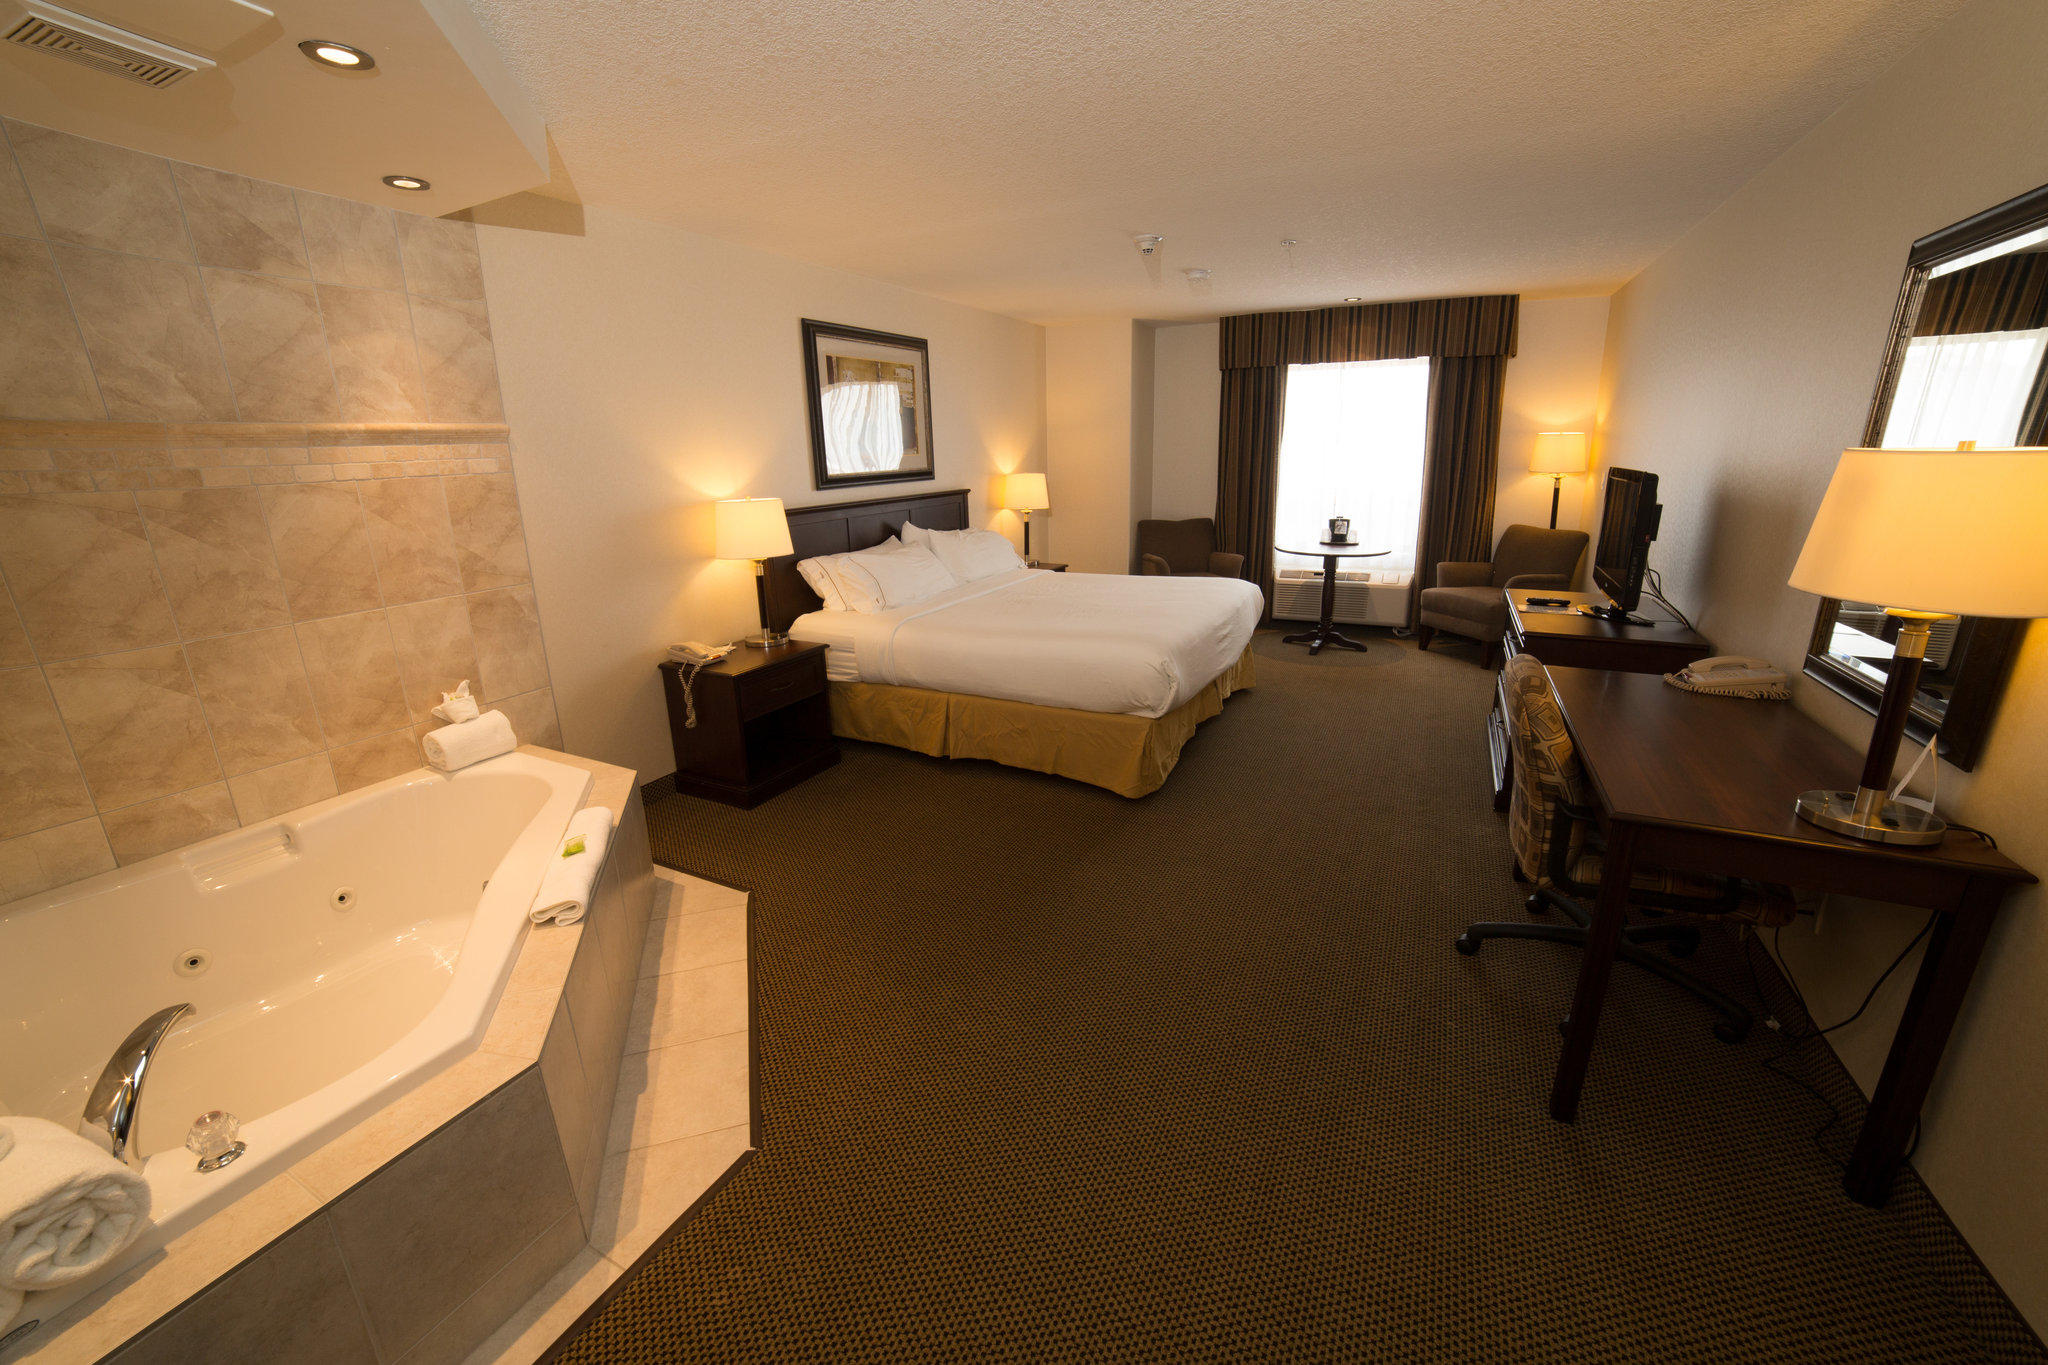 Holiday Inn Express & Suites Whitecourt Southeast, an IHG Hotel Whitecourt (780)778-2512